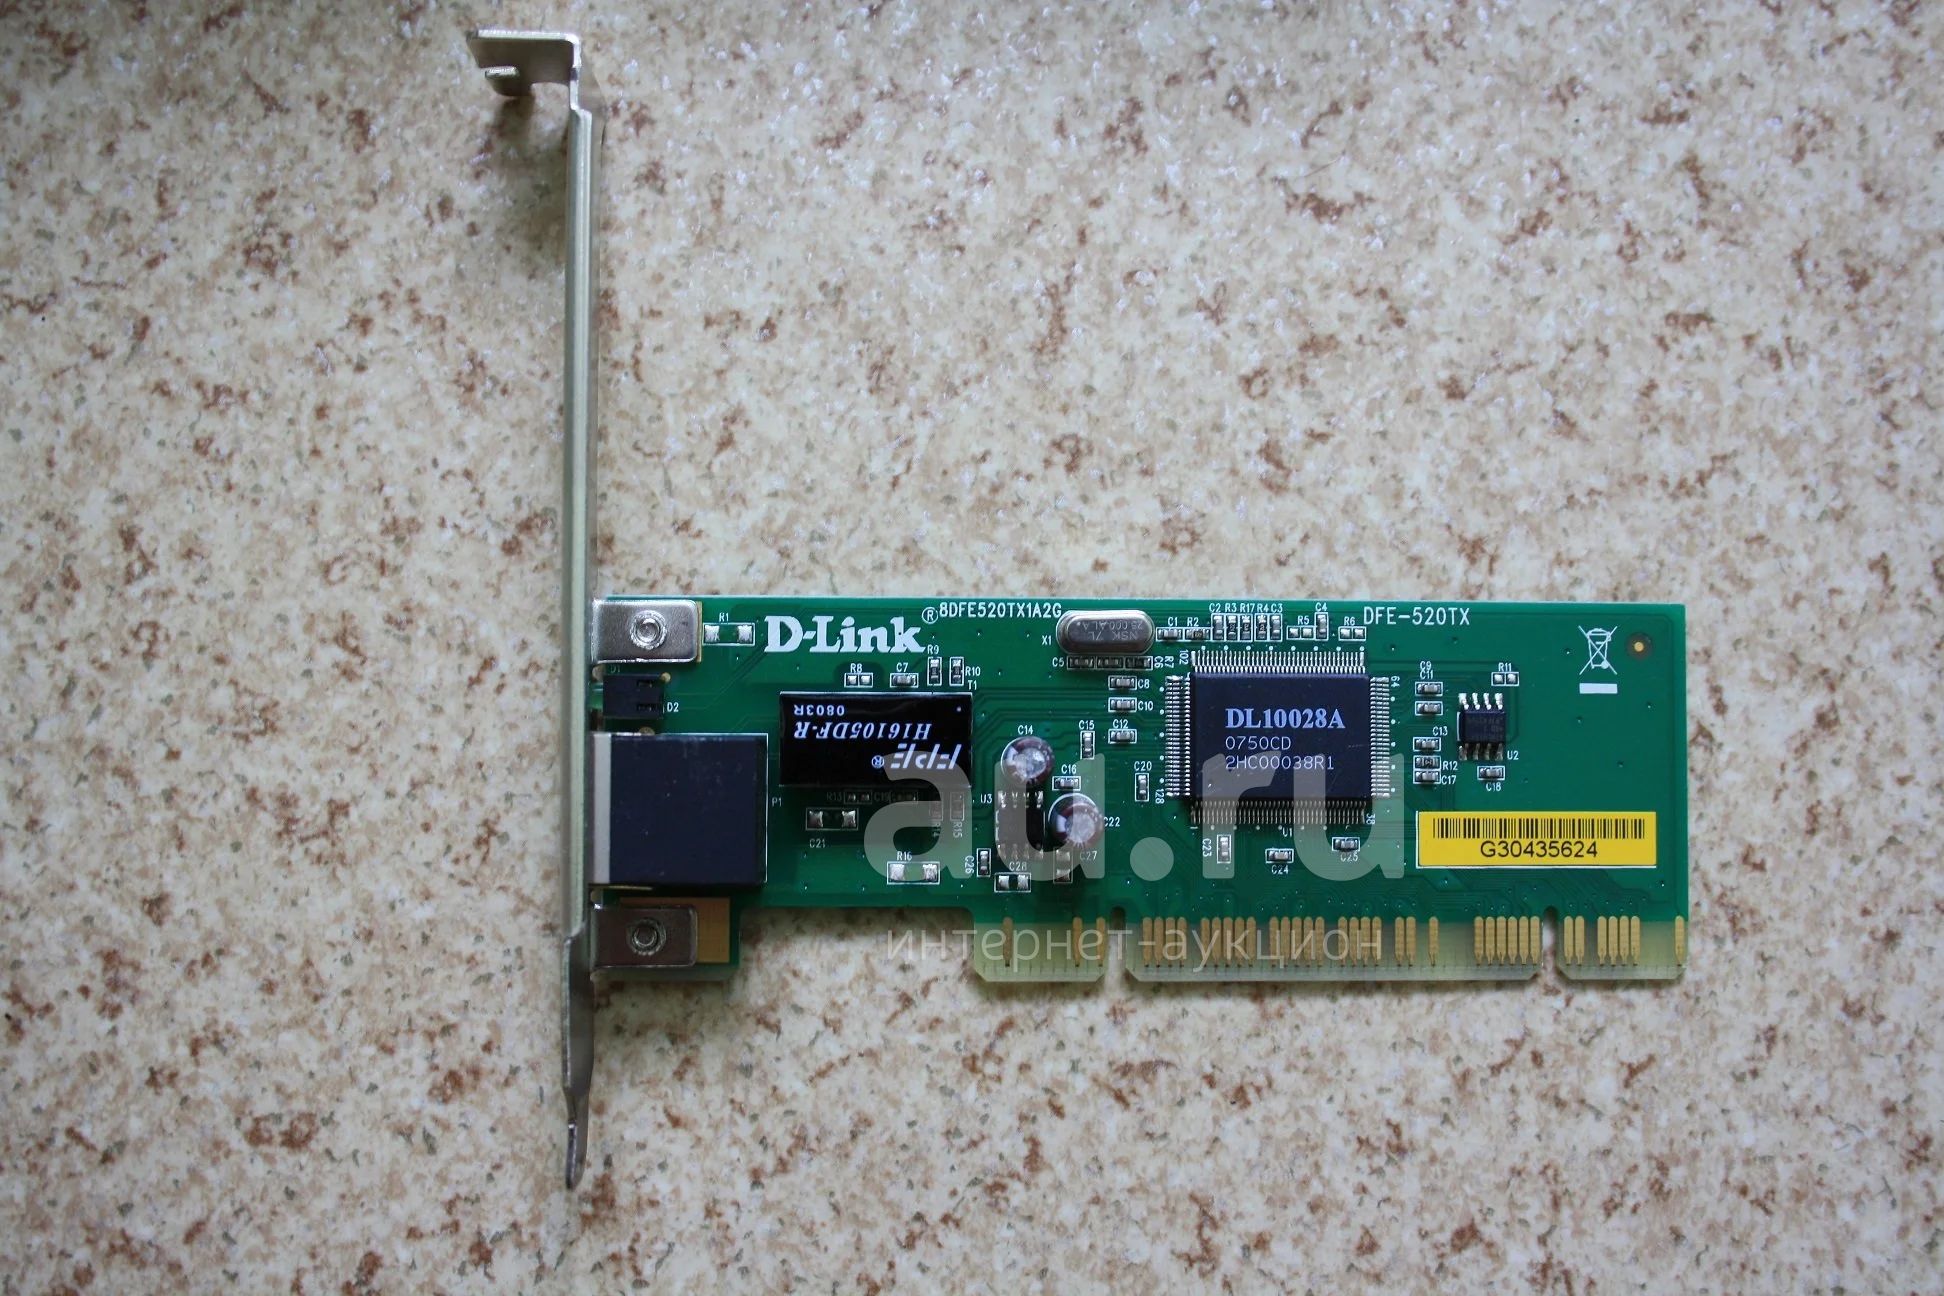 D link dfe 520tx. DFE-520tx. Сетевая карта d-link DFE-690 txd fast Ethernet 10/100 для ноутбука. Продаётся сетевая карта d-link DFE-520tx 10/100base-TX. В отличном рабочем.